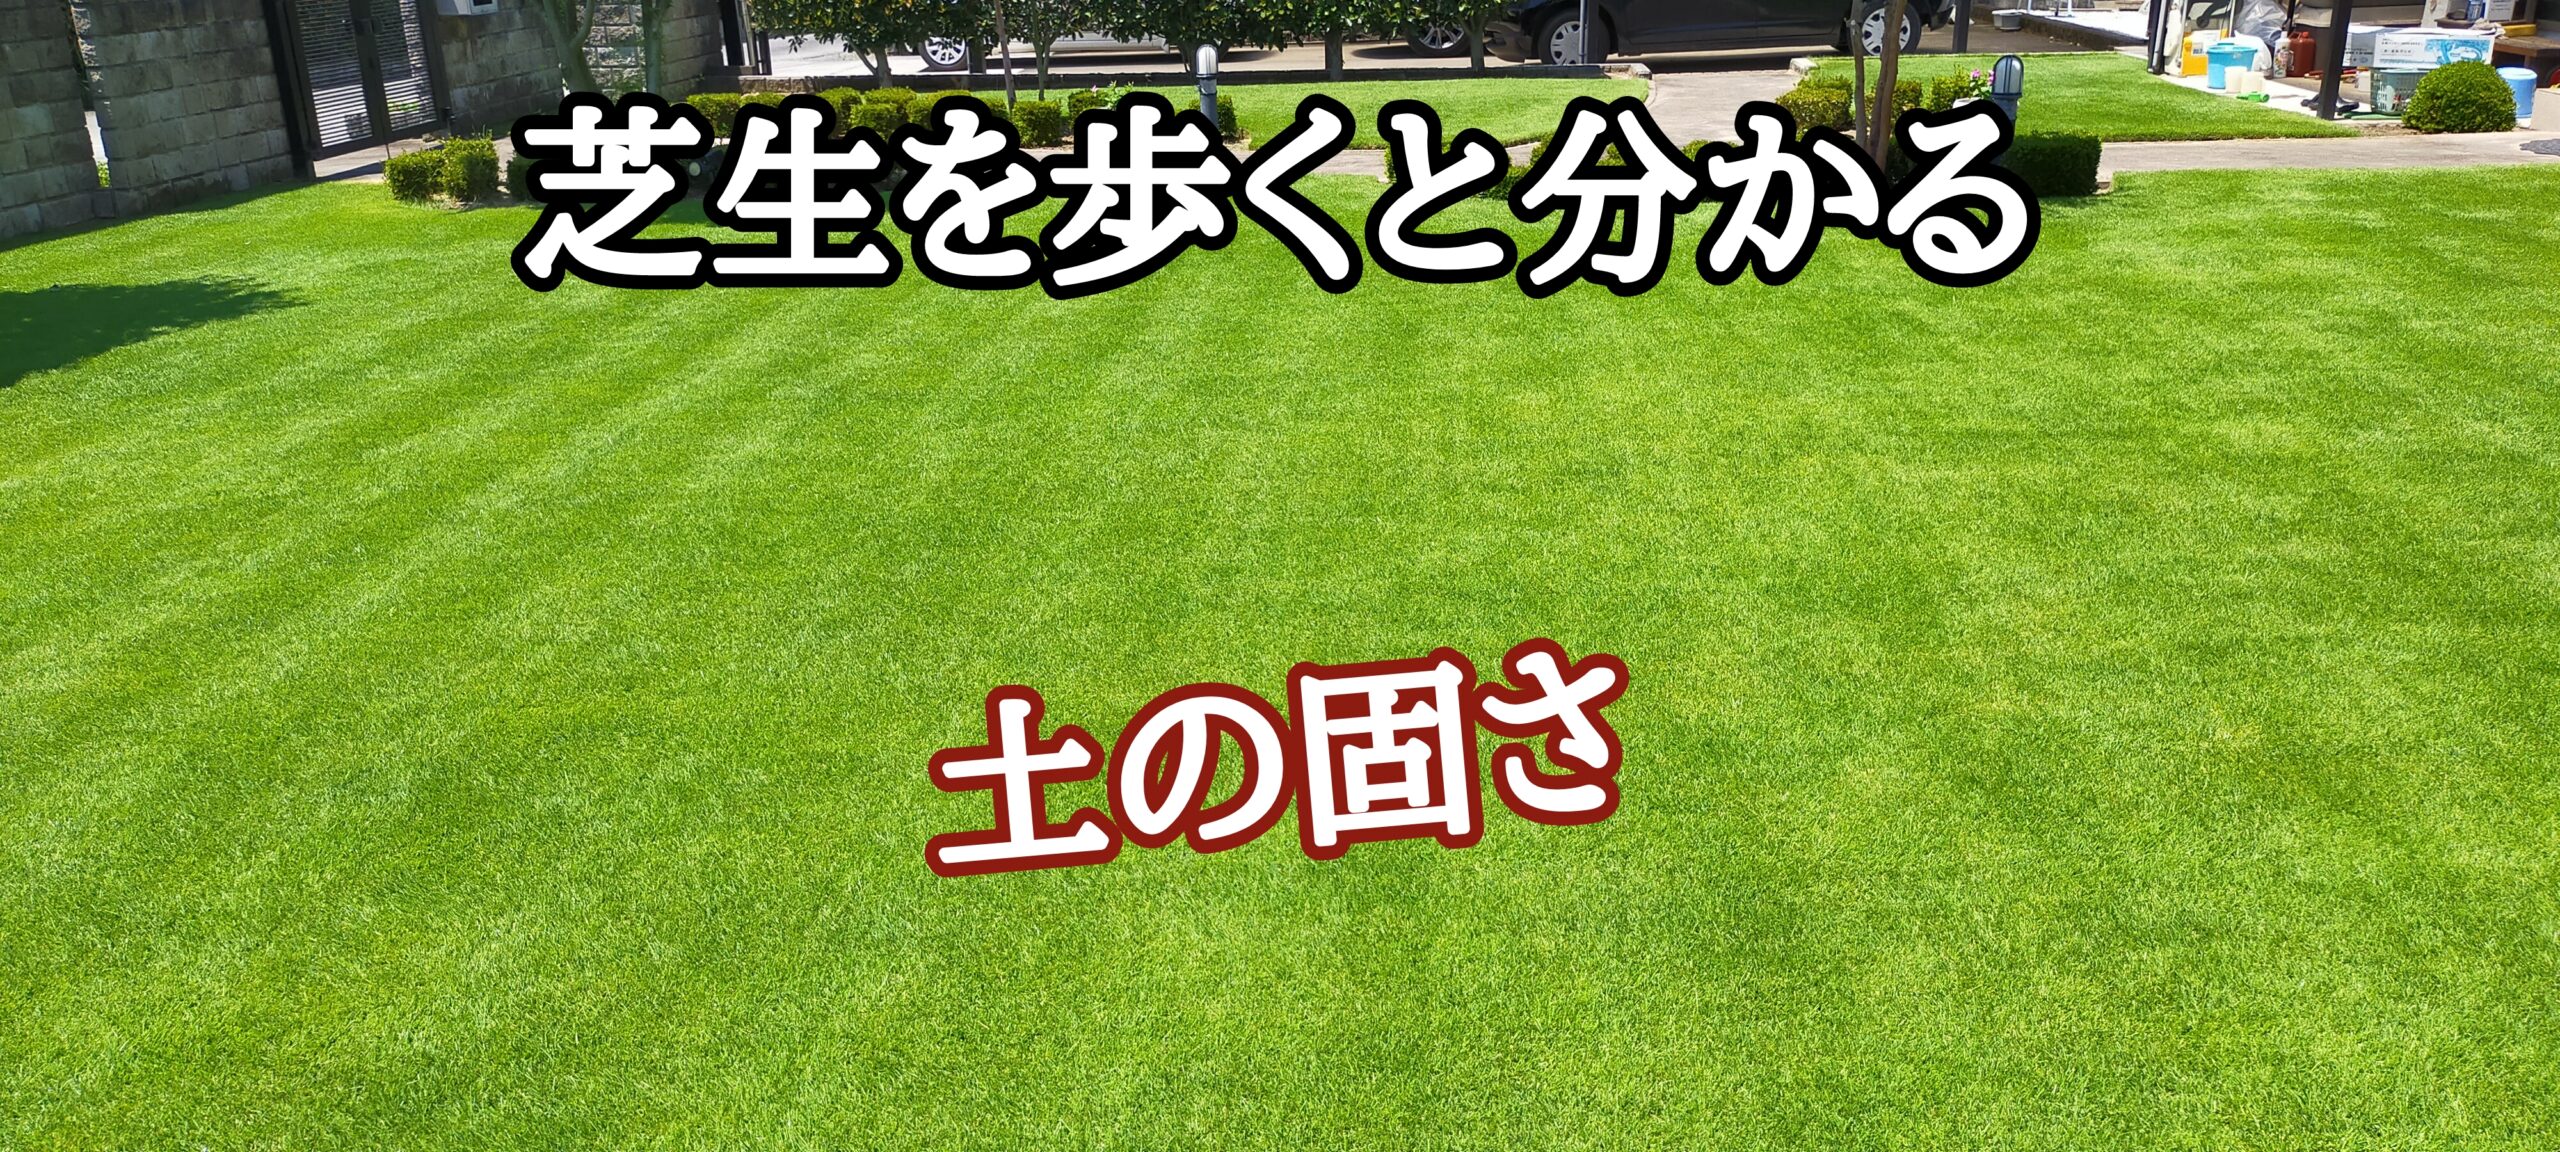 芝生を歩くと分かること【stand.fm】